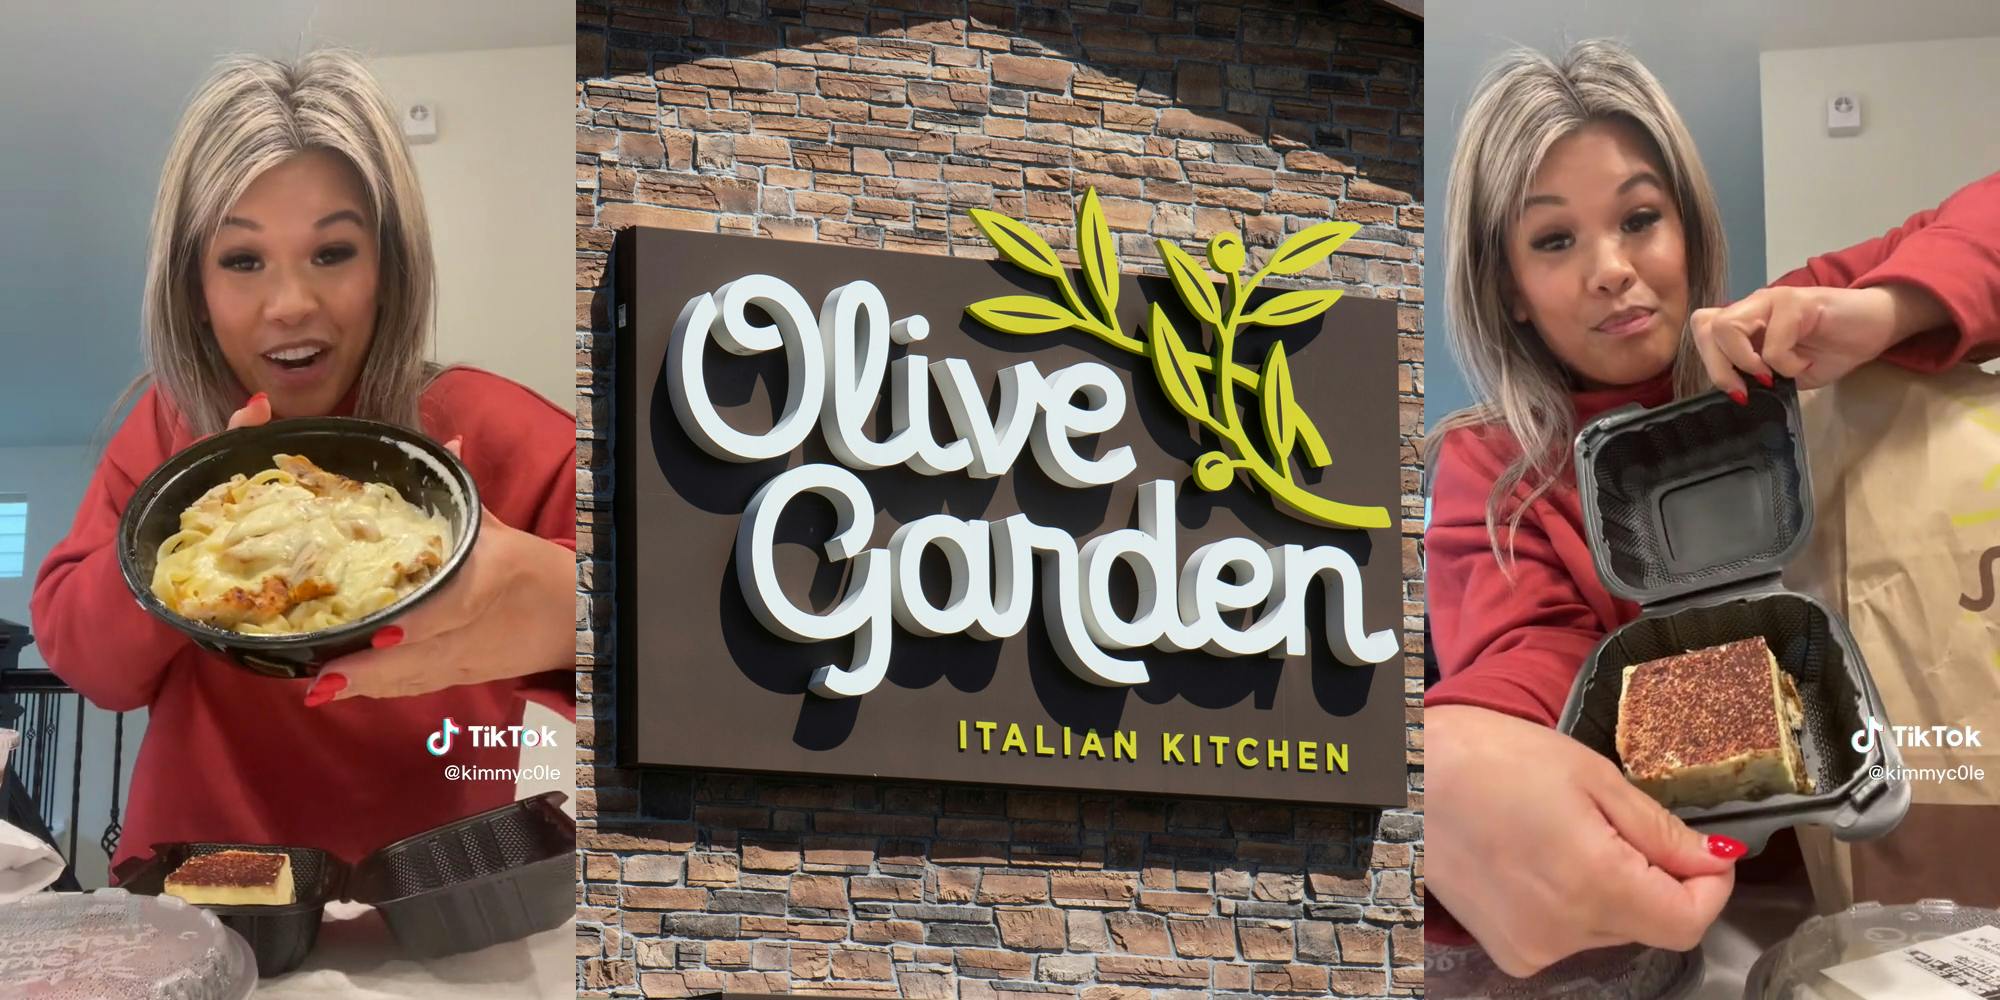 18 Secret Menu Hacks At Olive Garden You Should Know